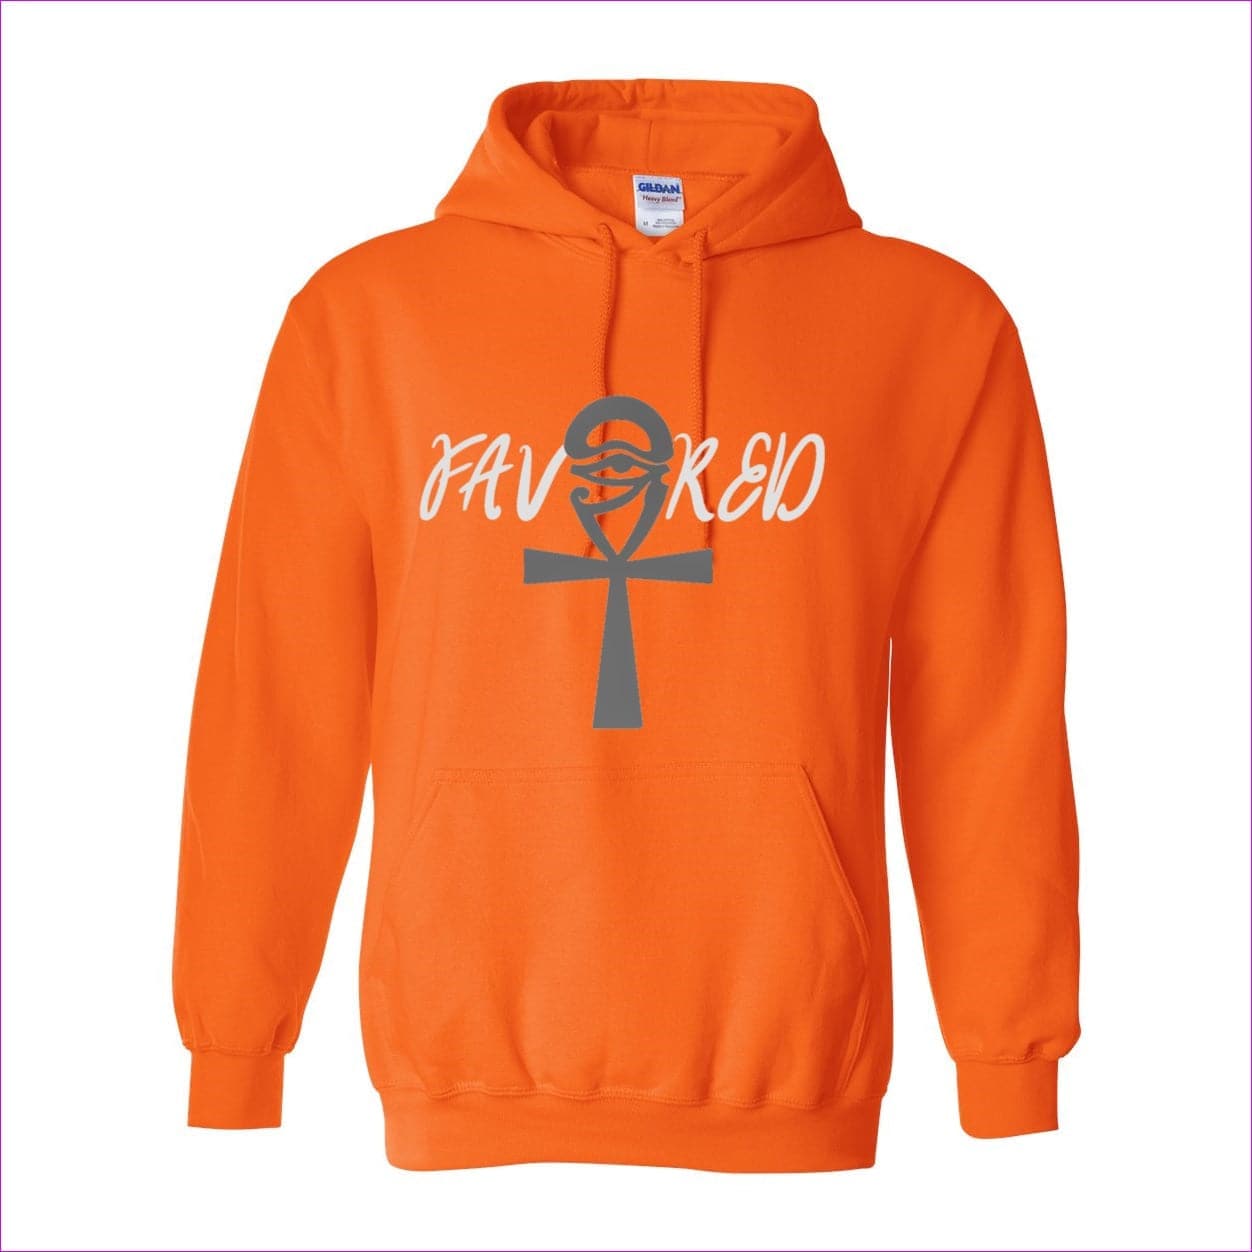 S. Orange - Favored Men's Heavy Blend Hooded Sweatshirt - mens hoodies at TFC&H Co.